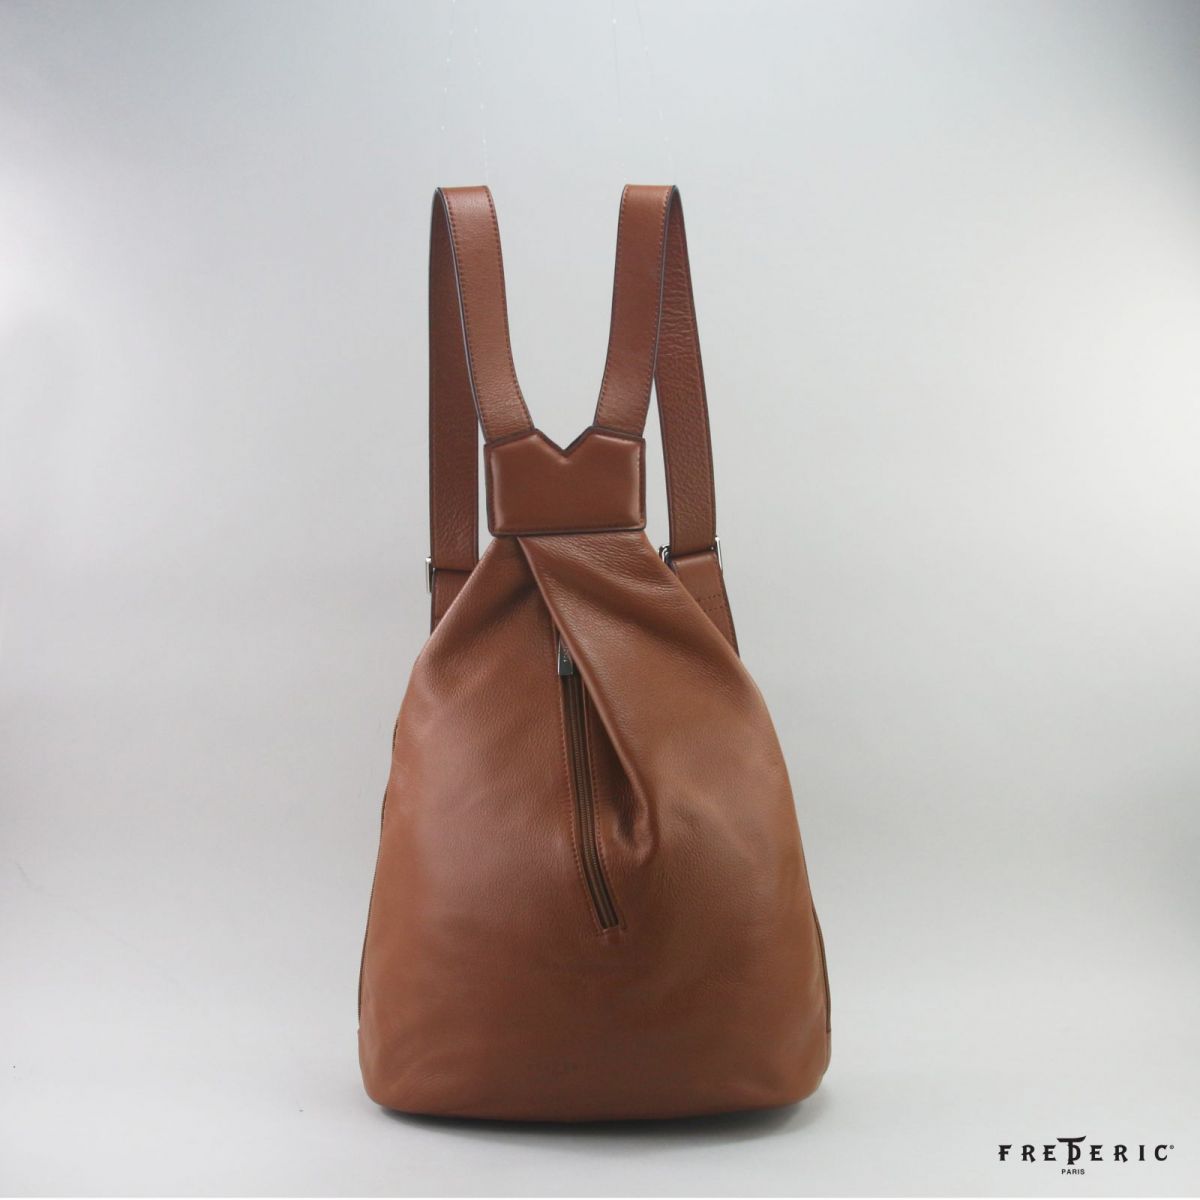 Crossed Backpack - Medium Bag